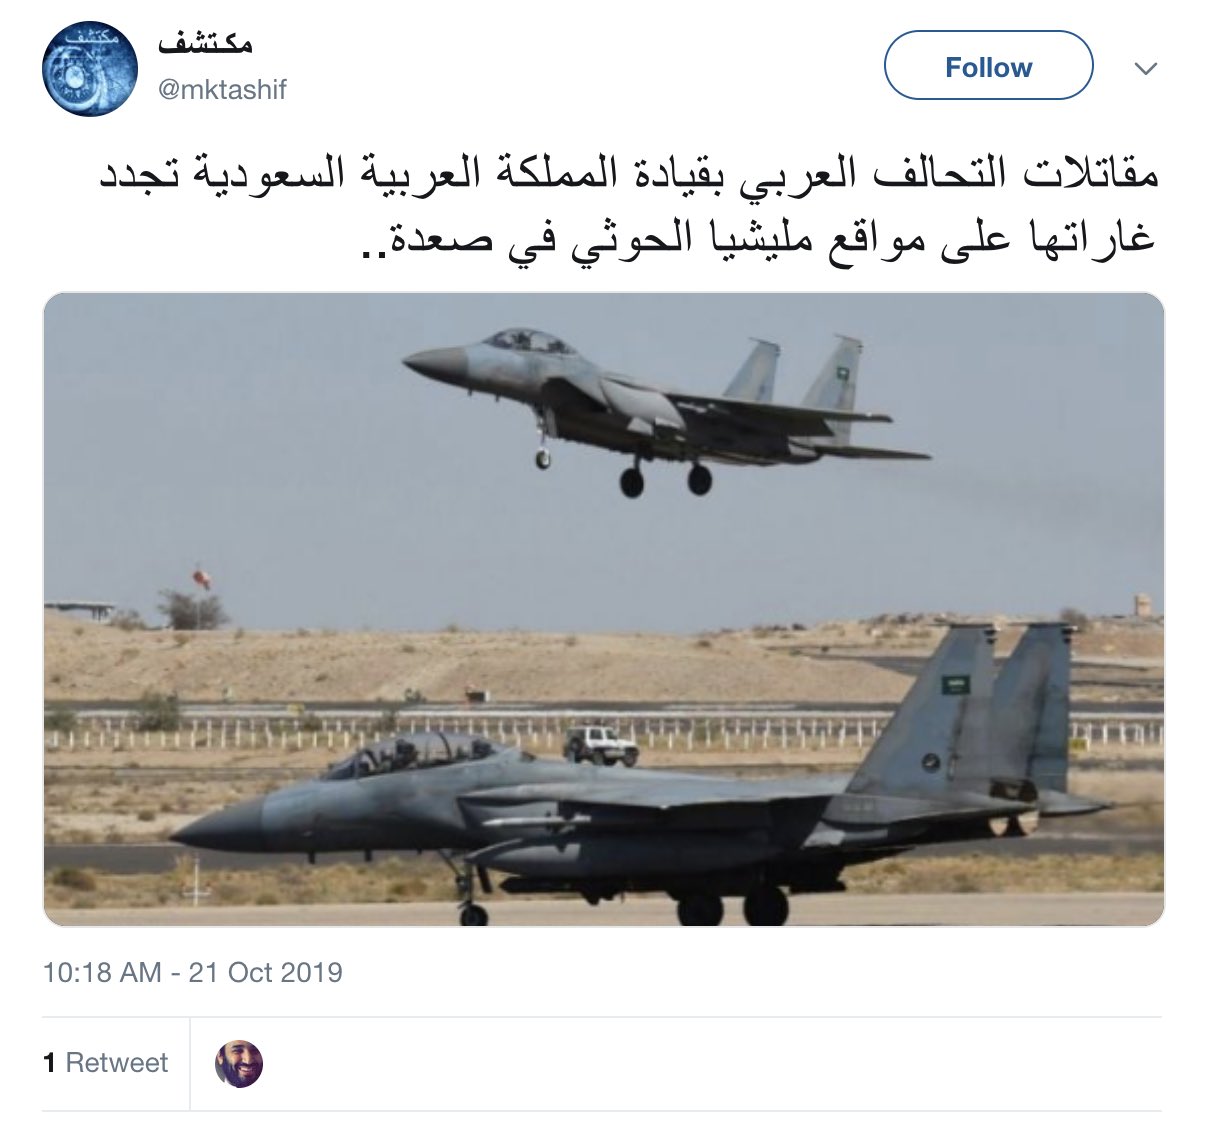 イエメンの戦争に関するツイートをするプロパガンダアカウント